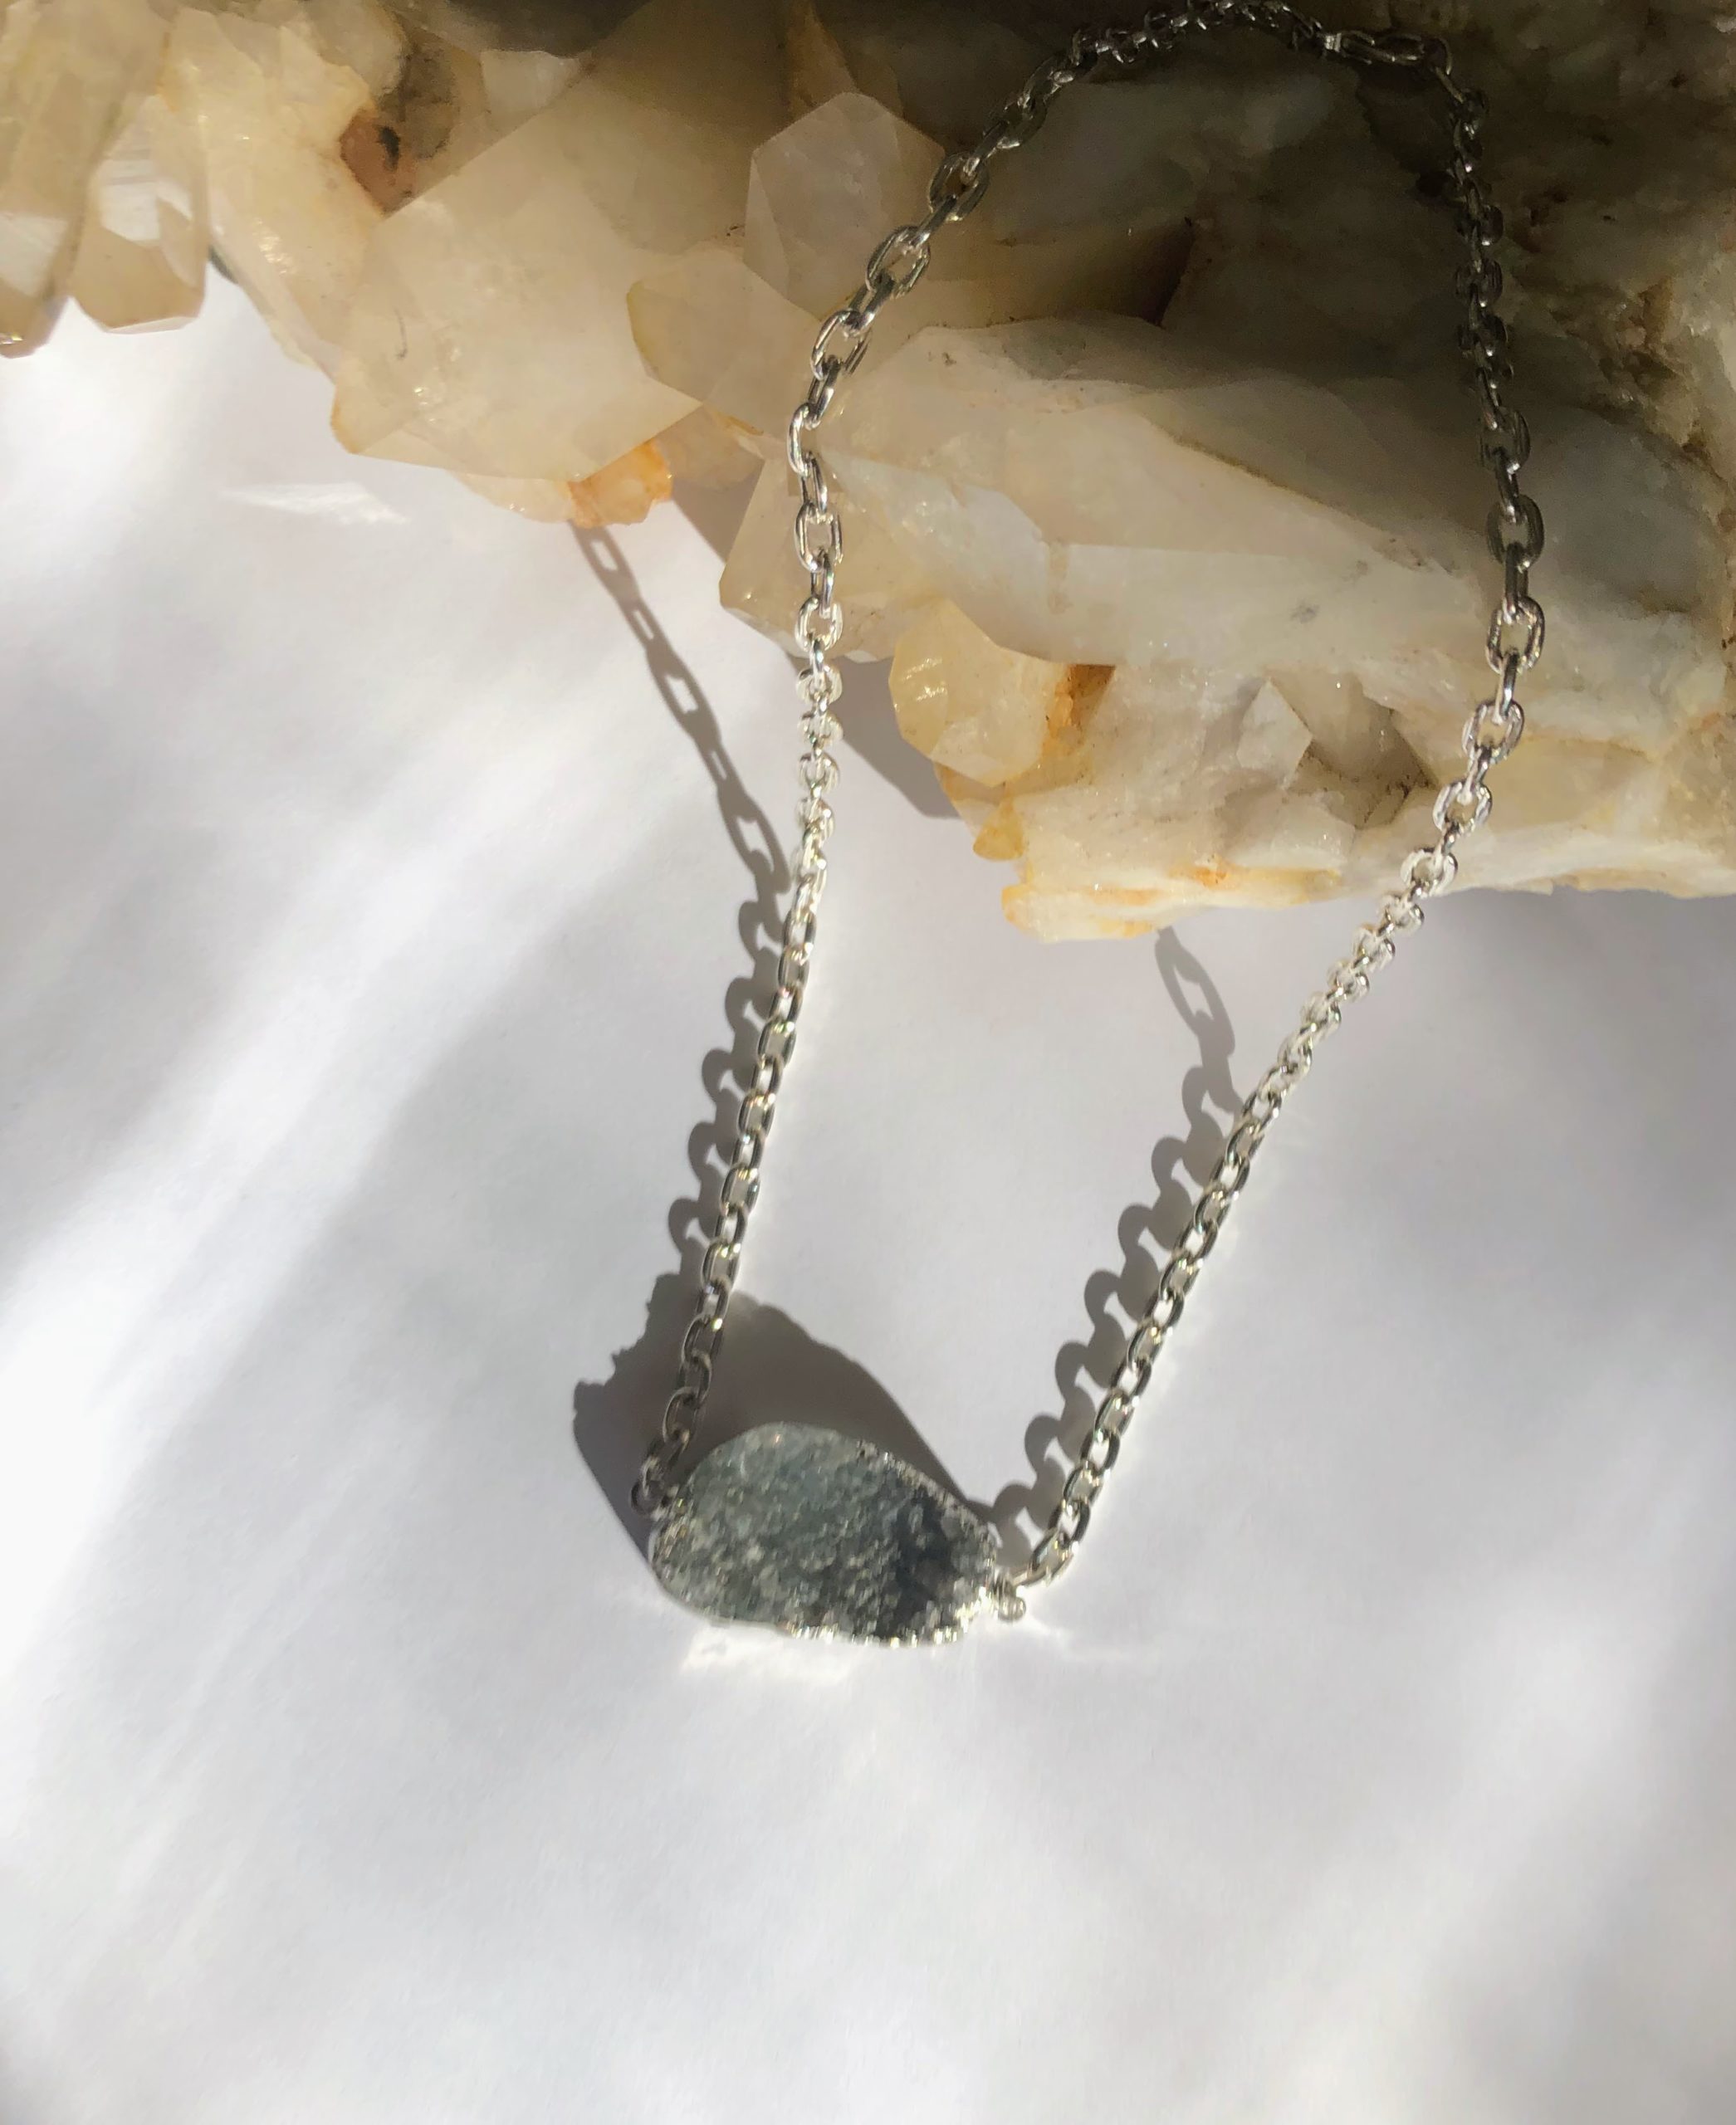 Celestine Necklace Raw Celestite Gemstone Celestine Crystal | Etsy | Blue  gemstone necklace, Gemstone jewelry handmade, Raw crystal jewelry